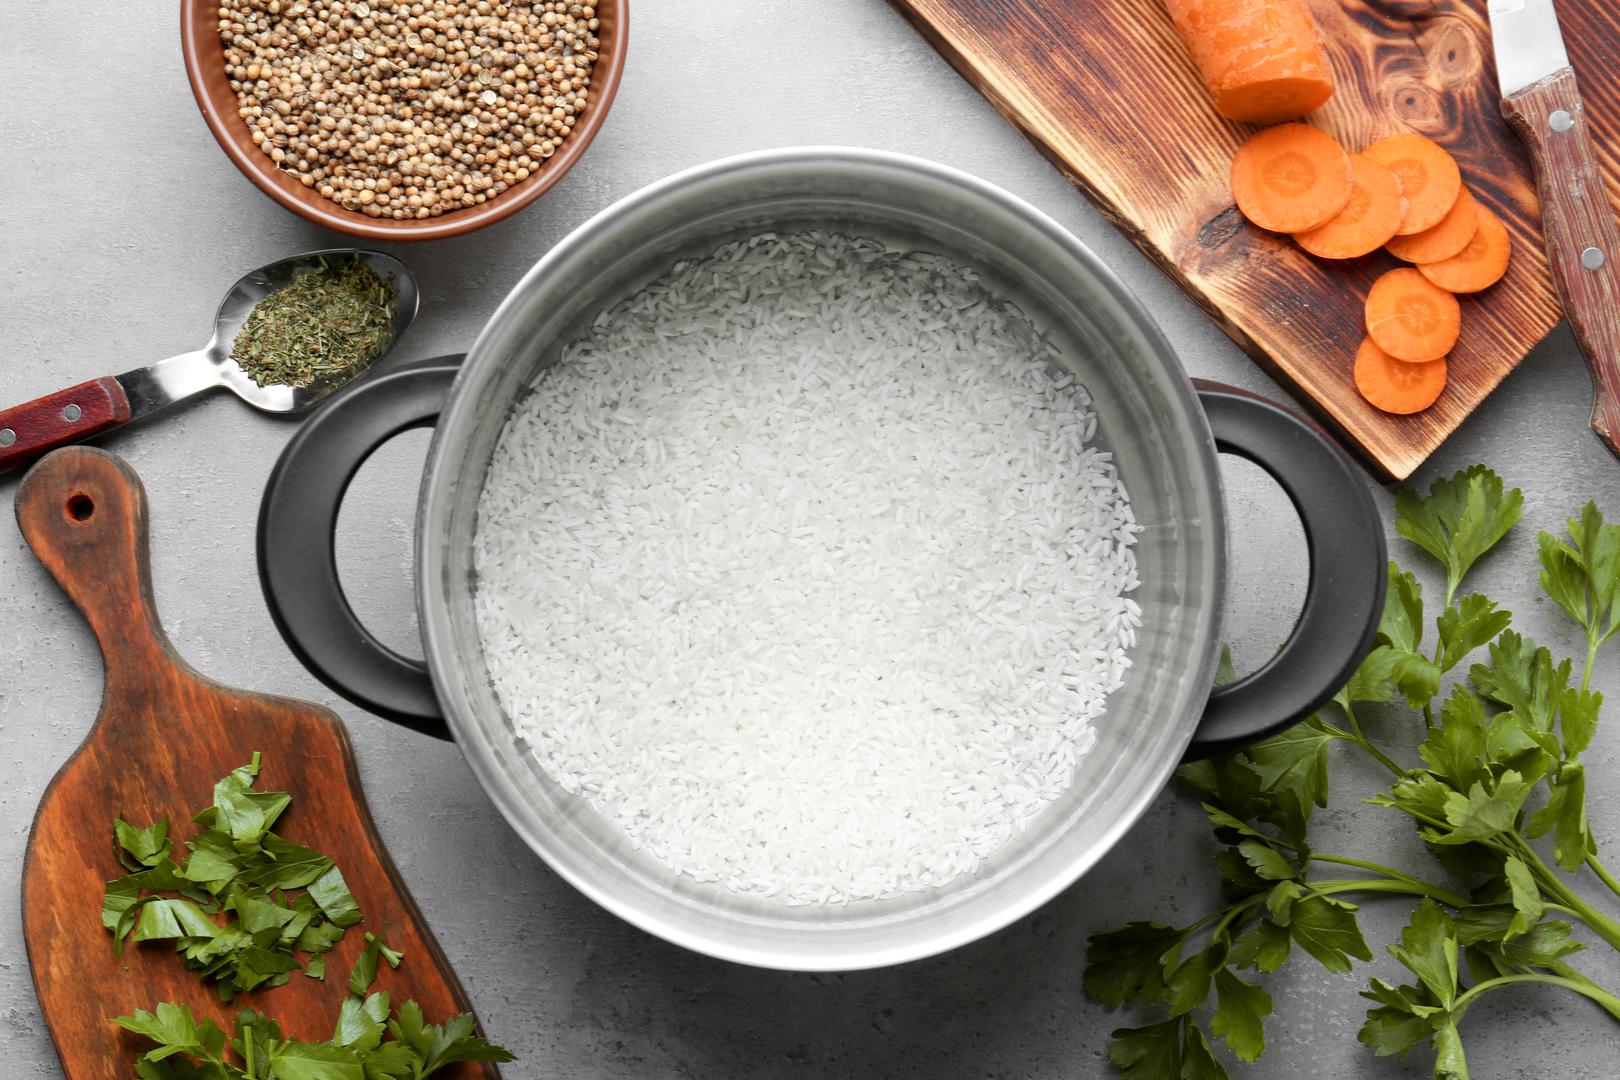 U pola litre vode stavite 100 grama riže, promiješajte i ostavite tako pola sata. Nakon toga procijedite i vodu iskoristite za ispiranje kose ili kože. Rižu možete skuhati i pojesti. Tako pripremljenu vodu možete čuvati u zatvorenoj staklenci u hladnjaku tjedan dana. 